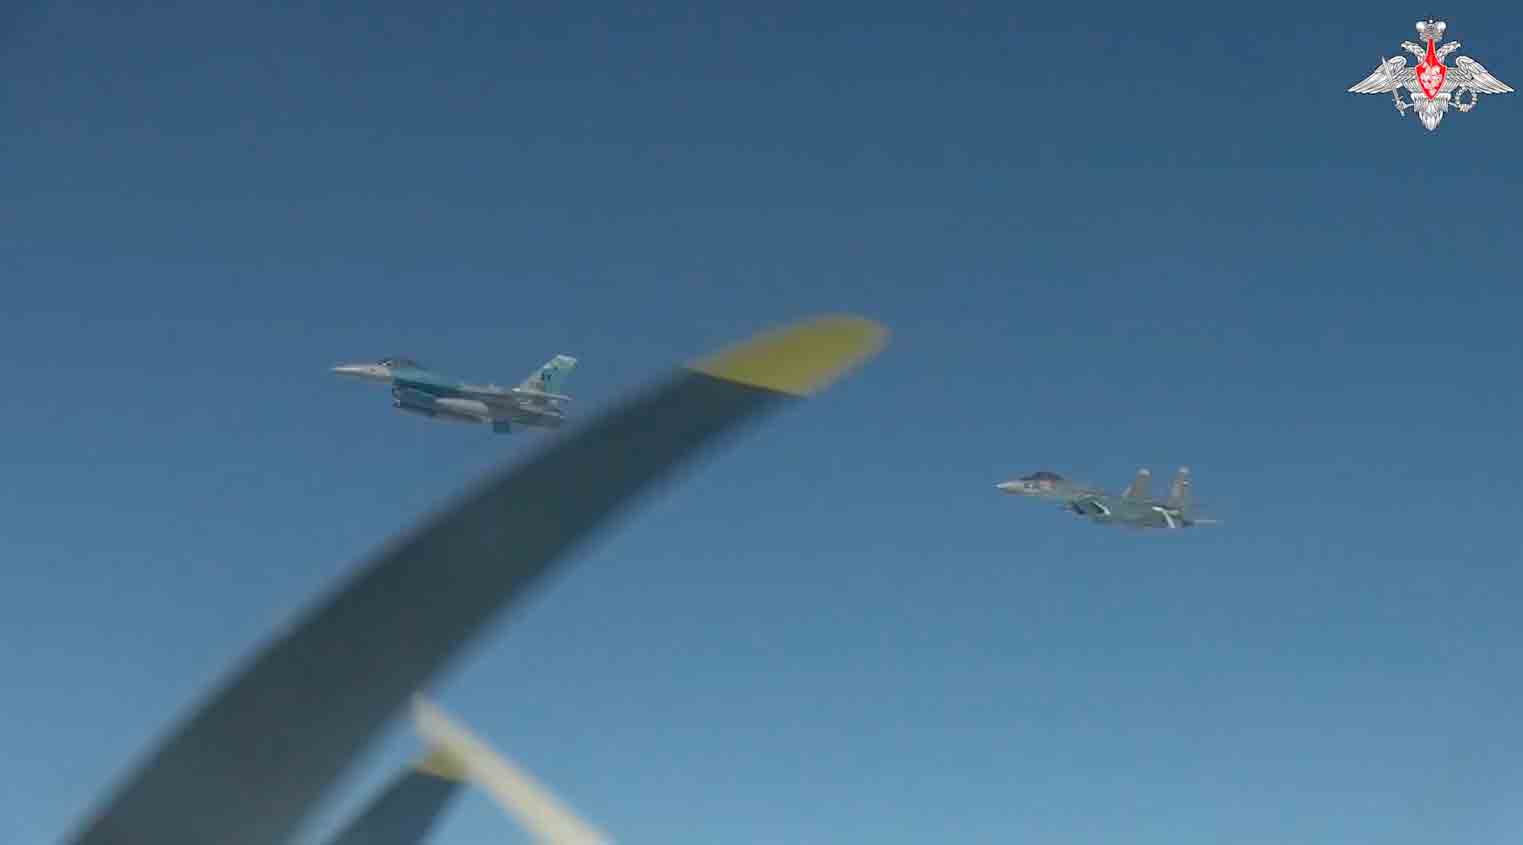 f-16 straaljagers met een typisch ‘aggressor’ verfschema onderscheppen russische bommenwerpers en jagers in alaska